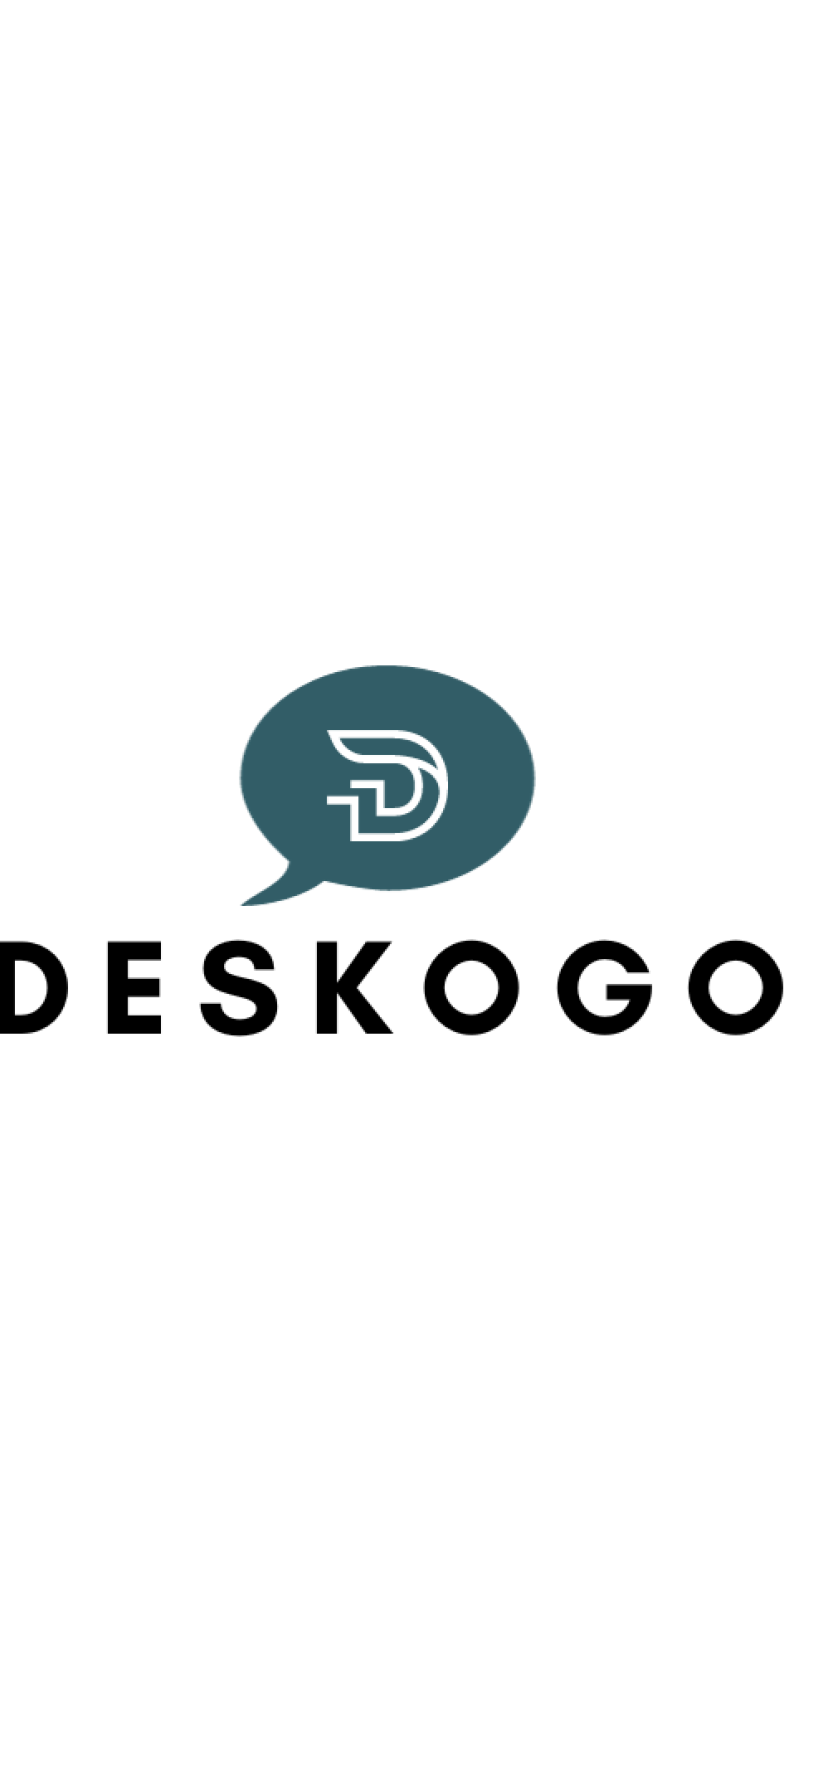 Deskogo.com Domain Name For Sale